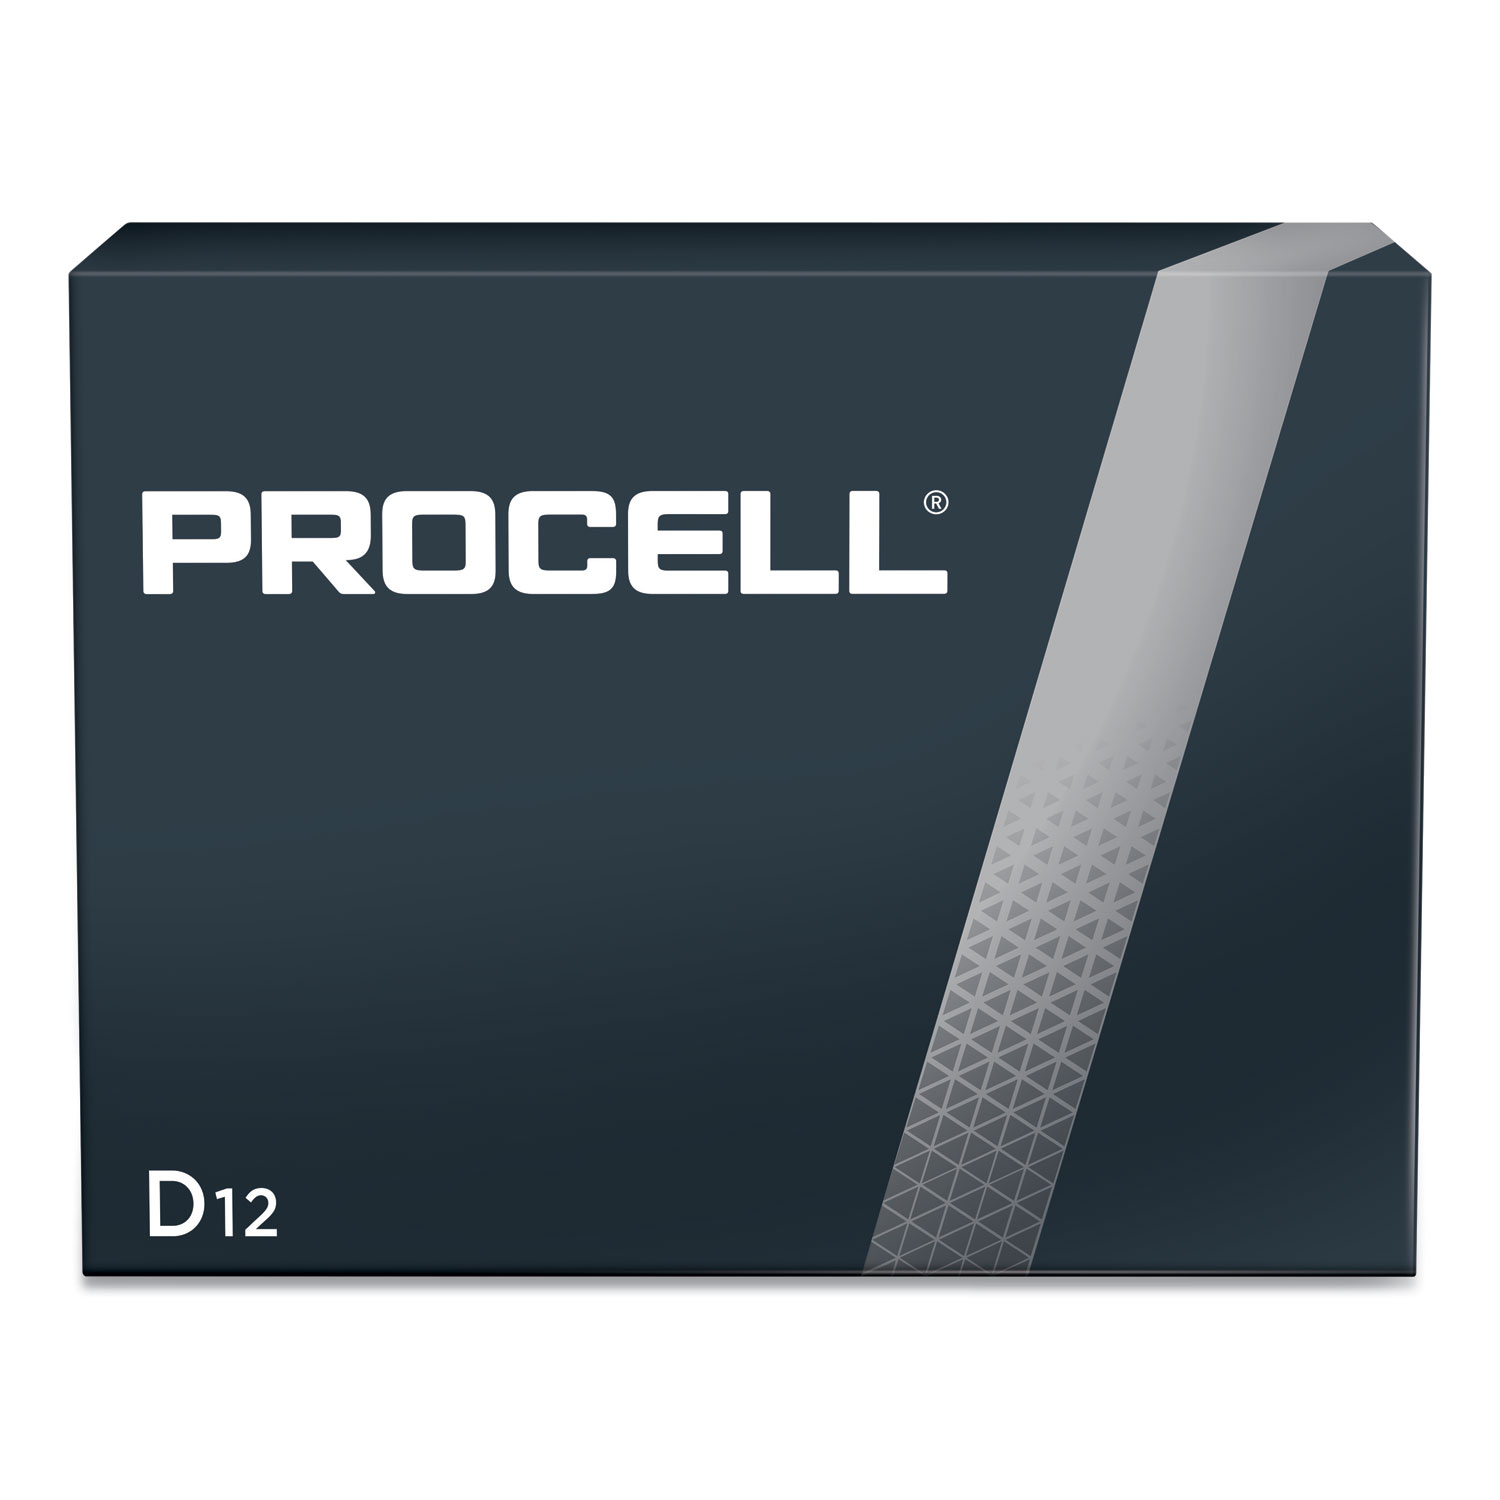  Procell PC1300 Alkaline D Batteries, 12/Box (DUR74823) 